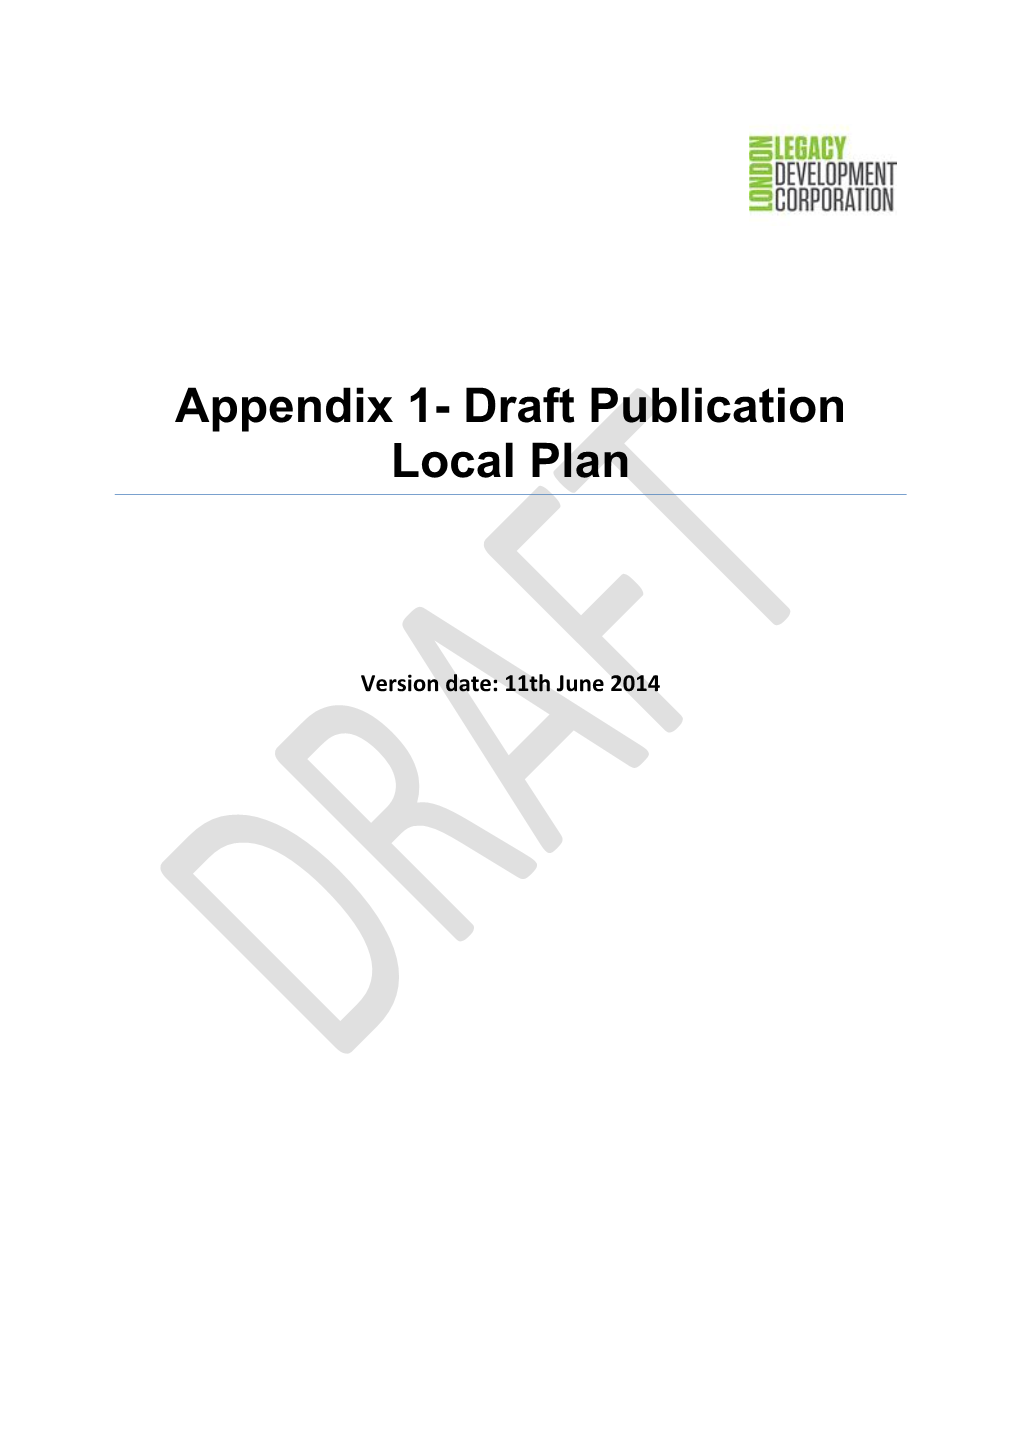 Appendix 1- Draft Publication Local Plan